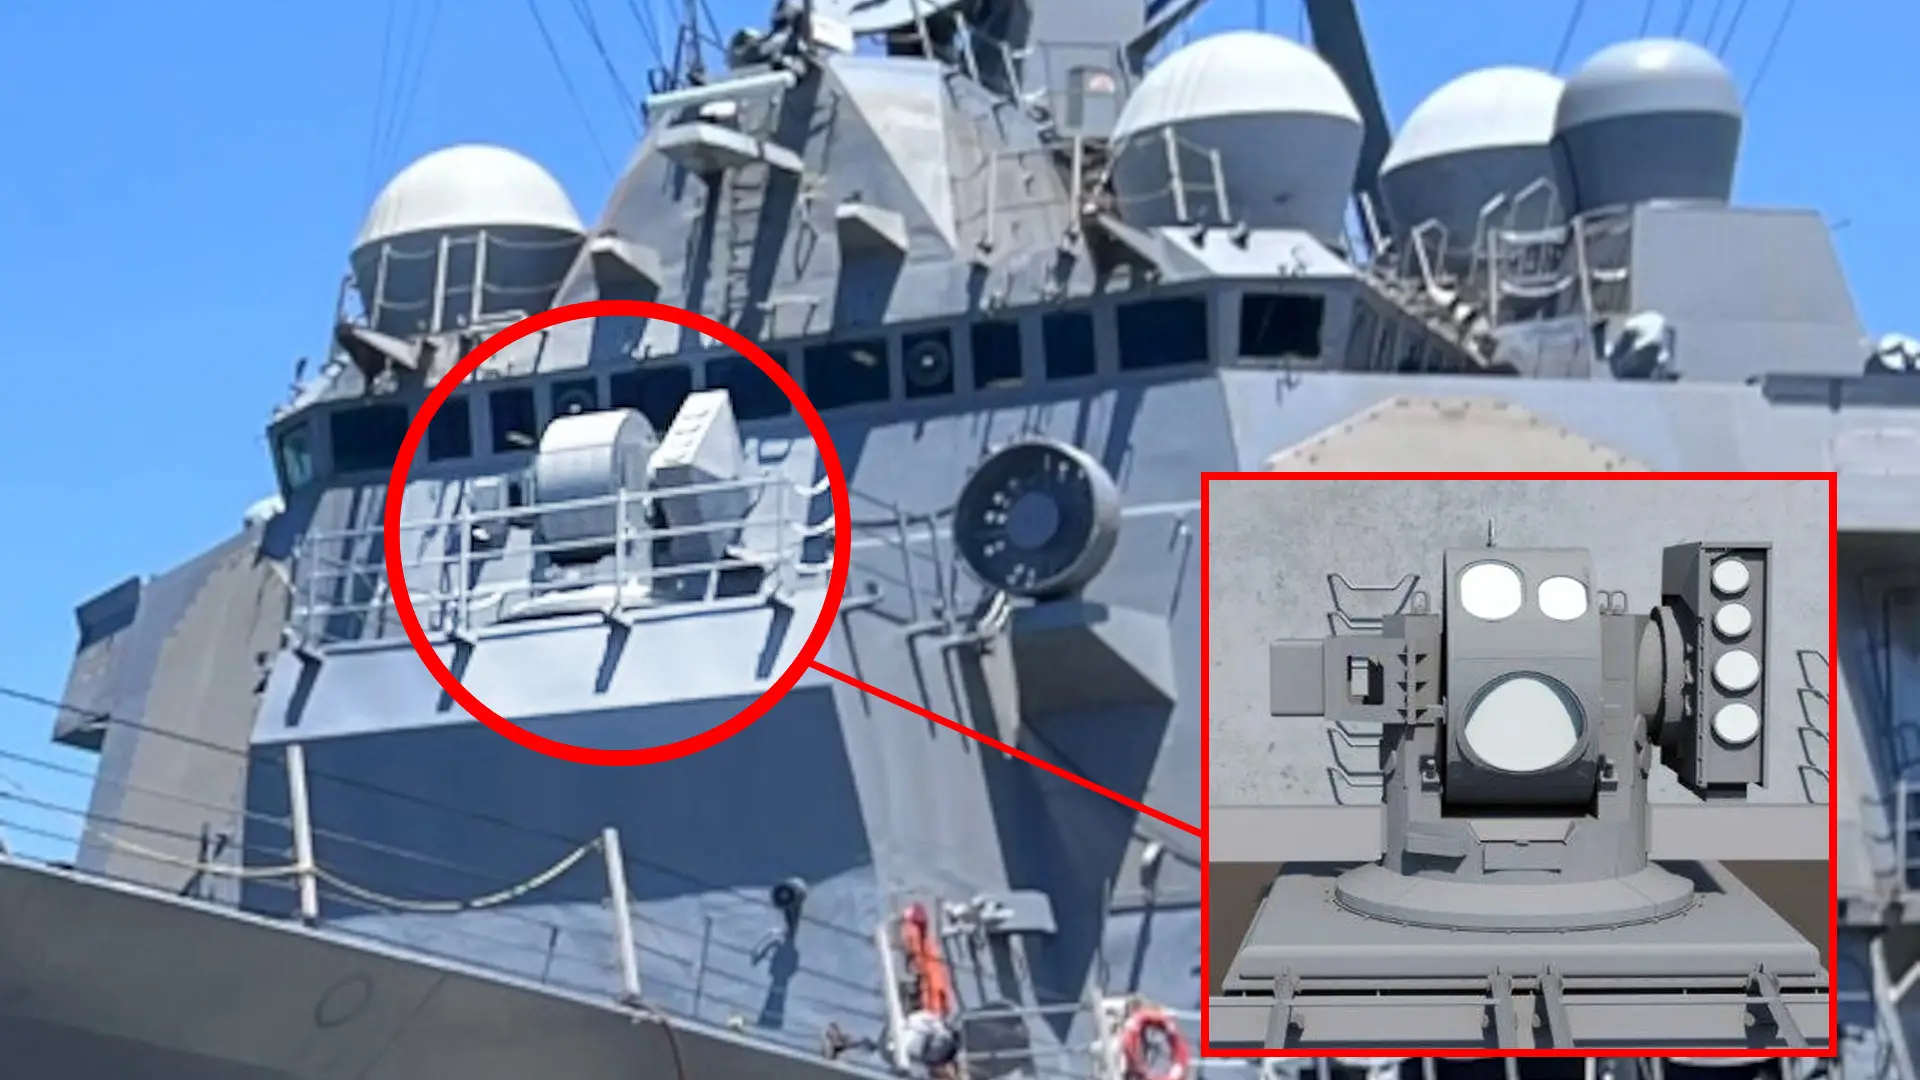 US Navy pokazała niszczyciel USS Preble z bronią laserową HELIOS - Gwiazda Śmierci zastąpiła działo Vulcan